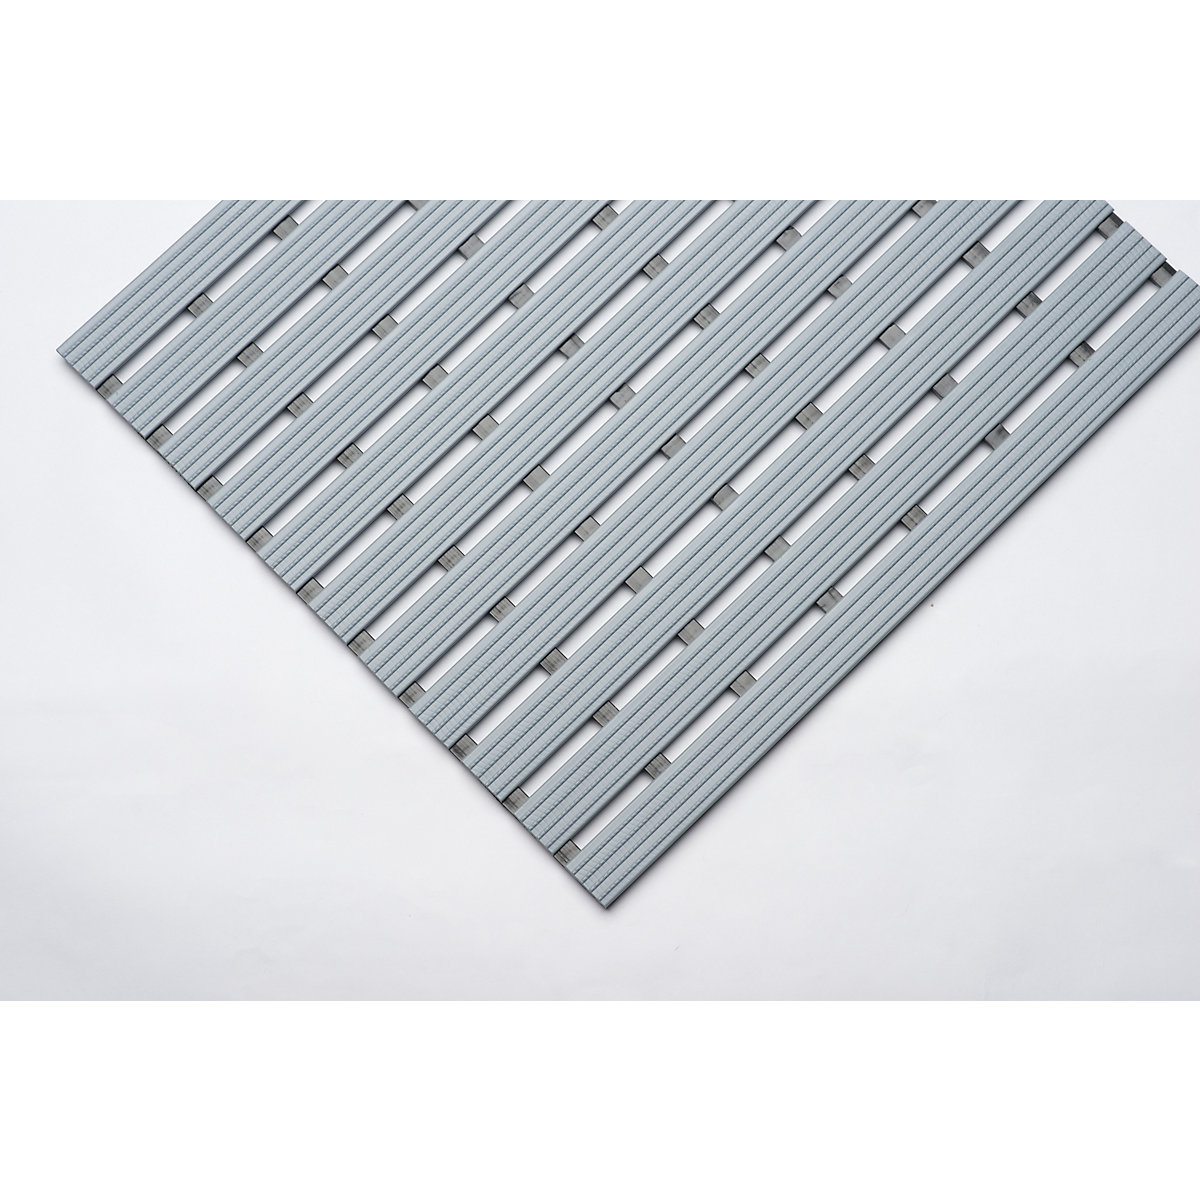 Kunststof mat, per str. mtr., loopvlak van harde kunststof, antislip, breedte 600 mm, grijs-10